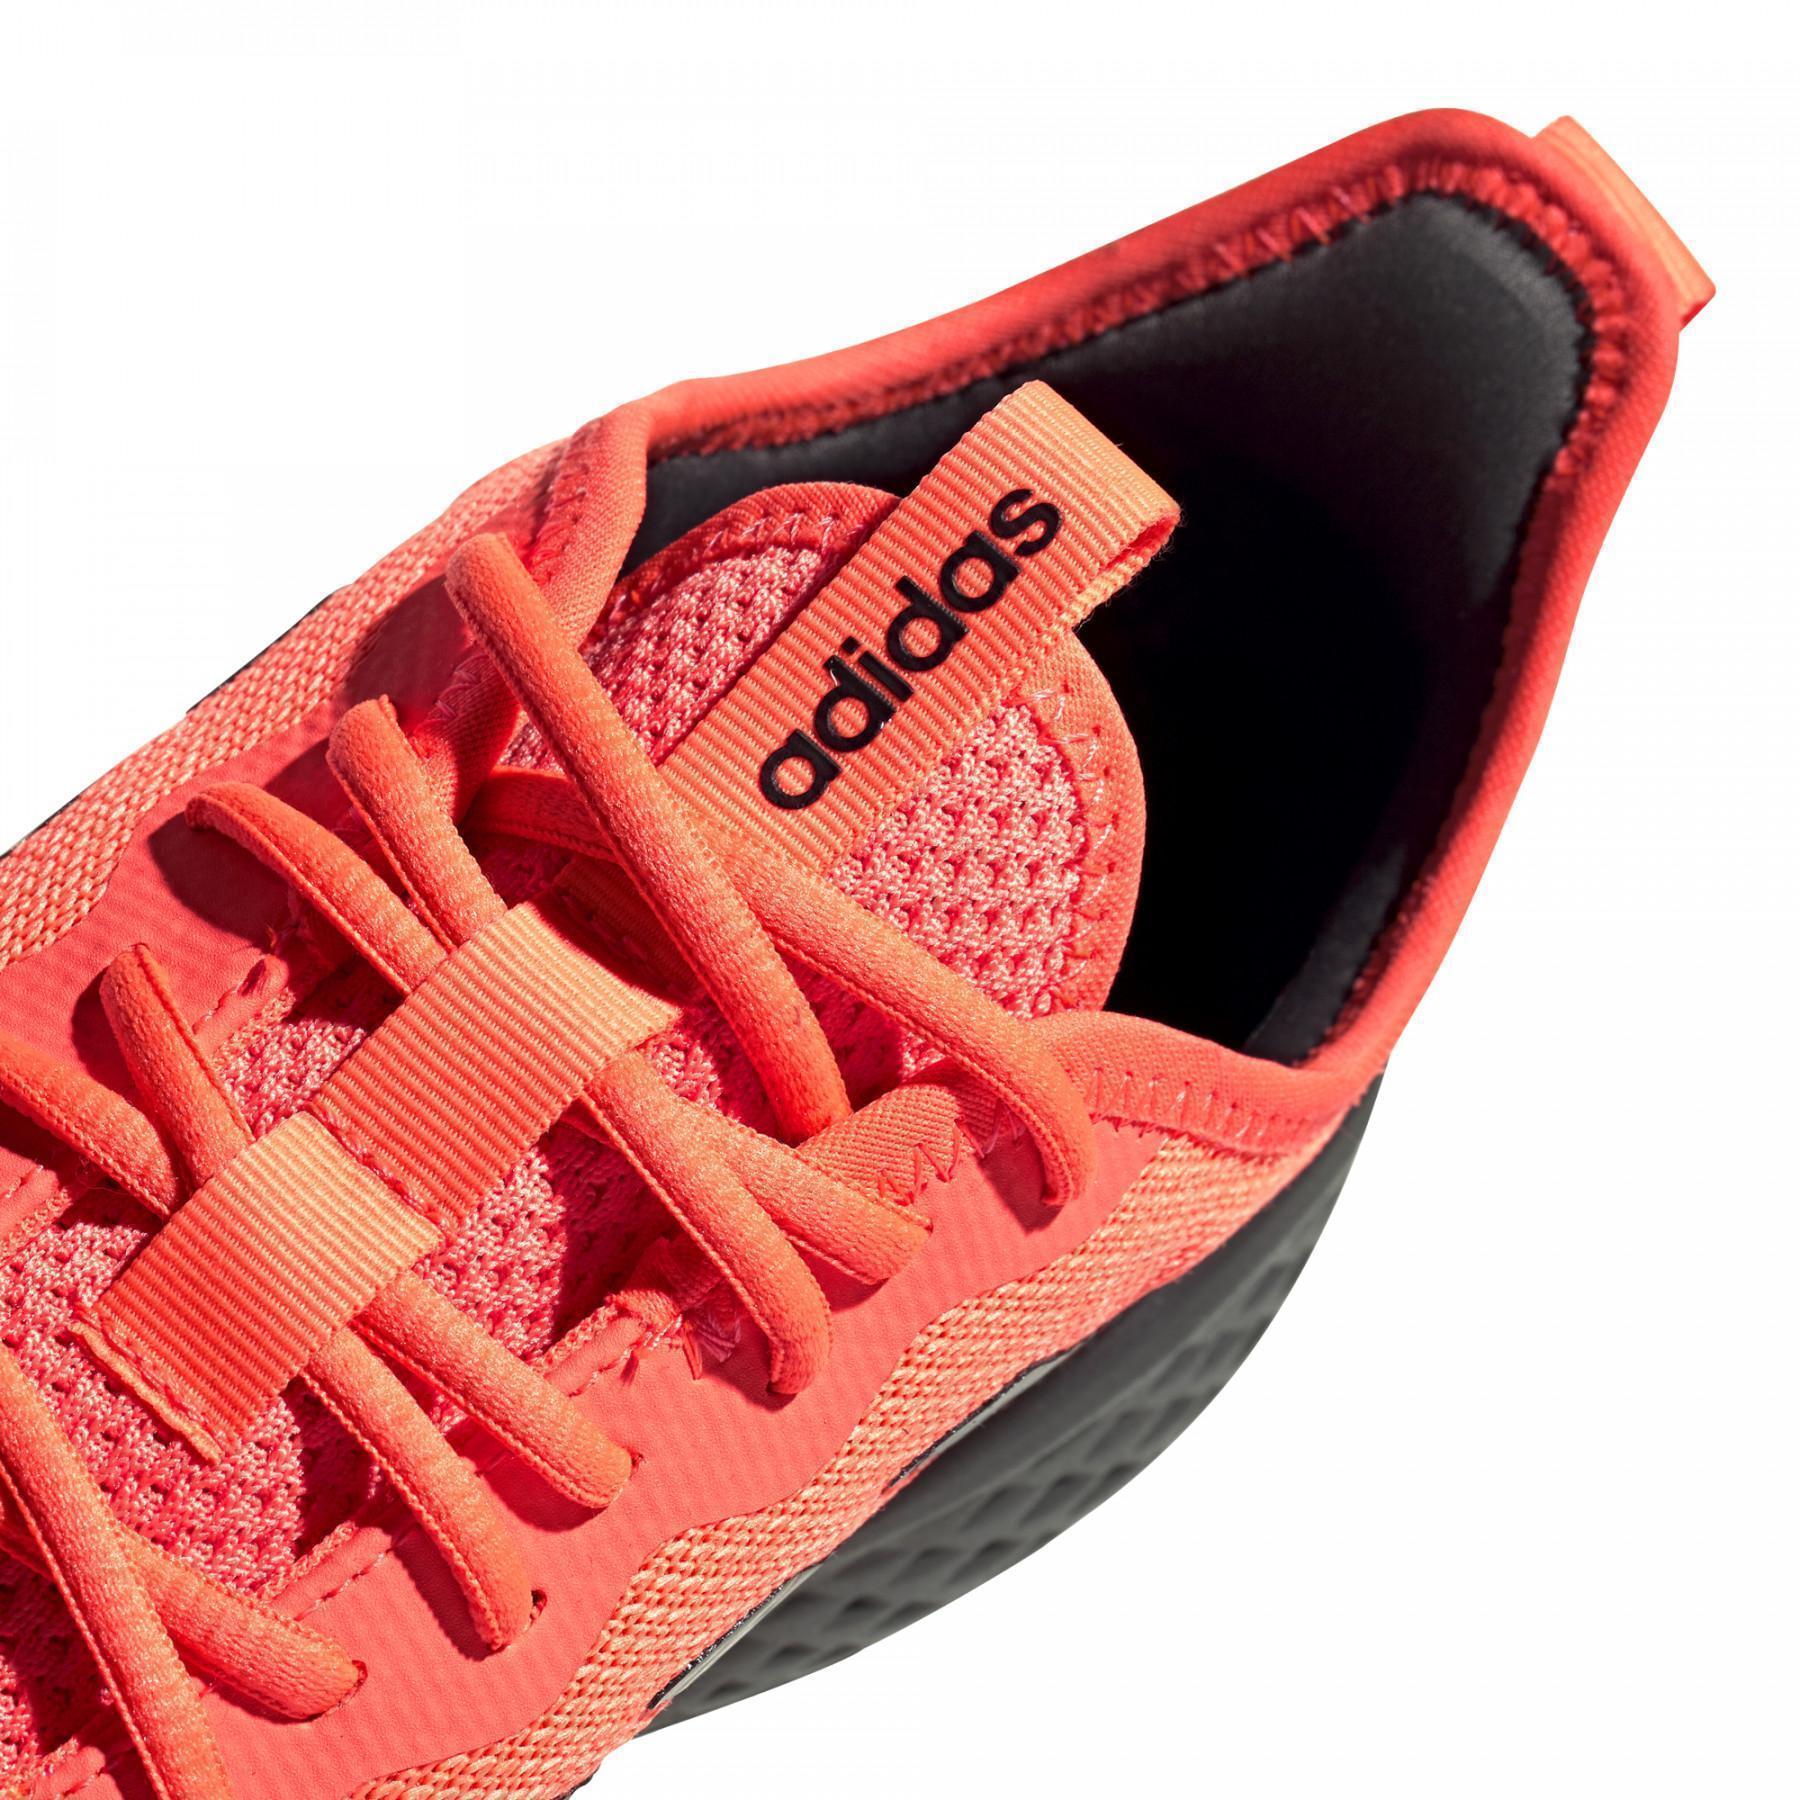 Chaussures de running adidas Fluidflow